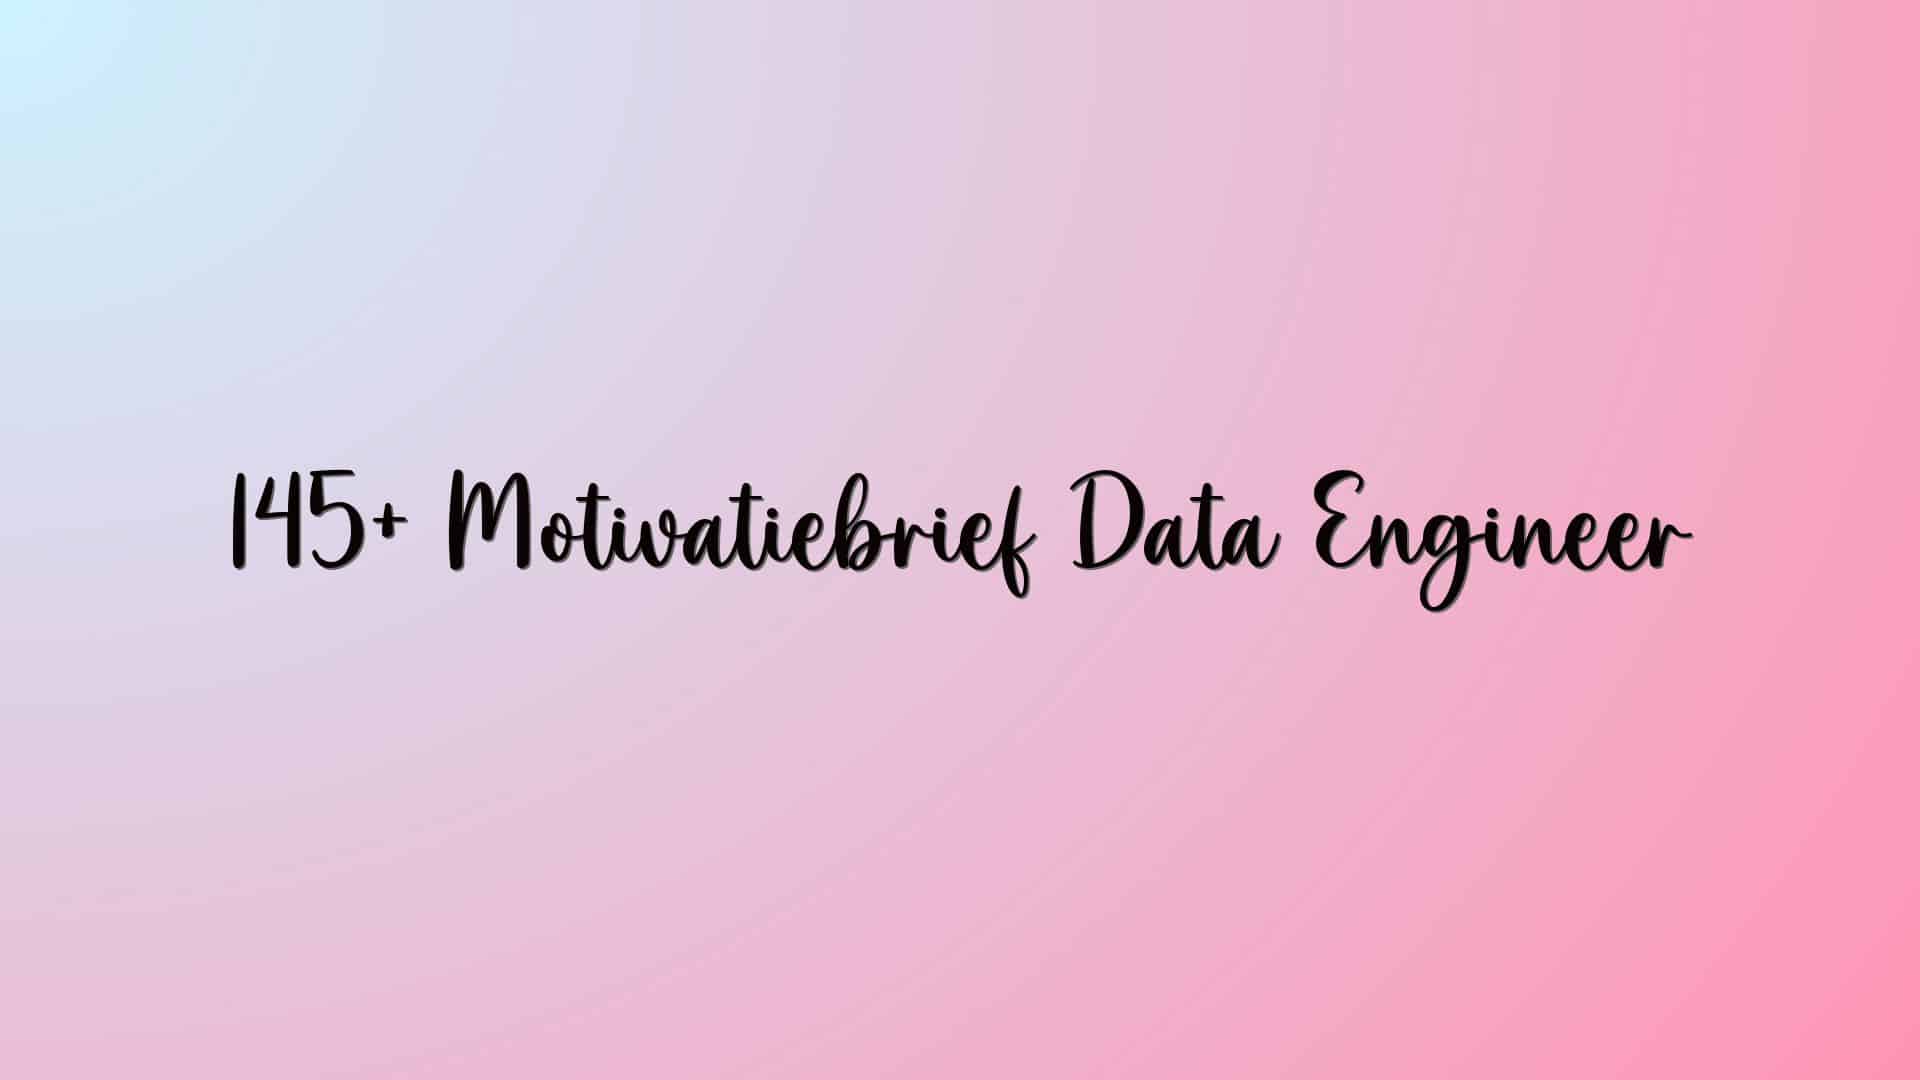 145+ Motivatiebrief Data Engineer